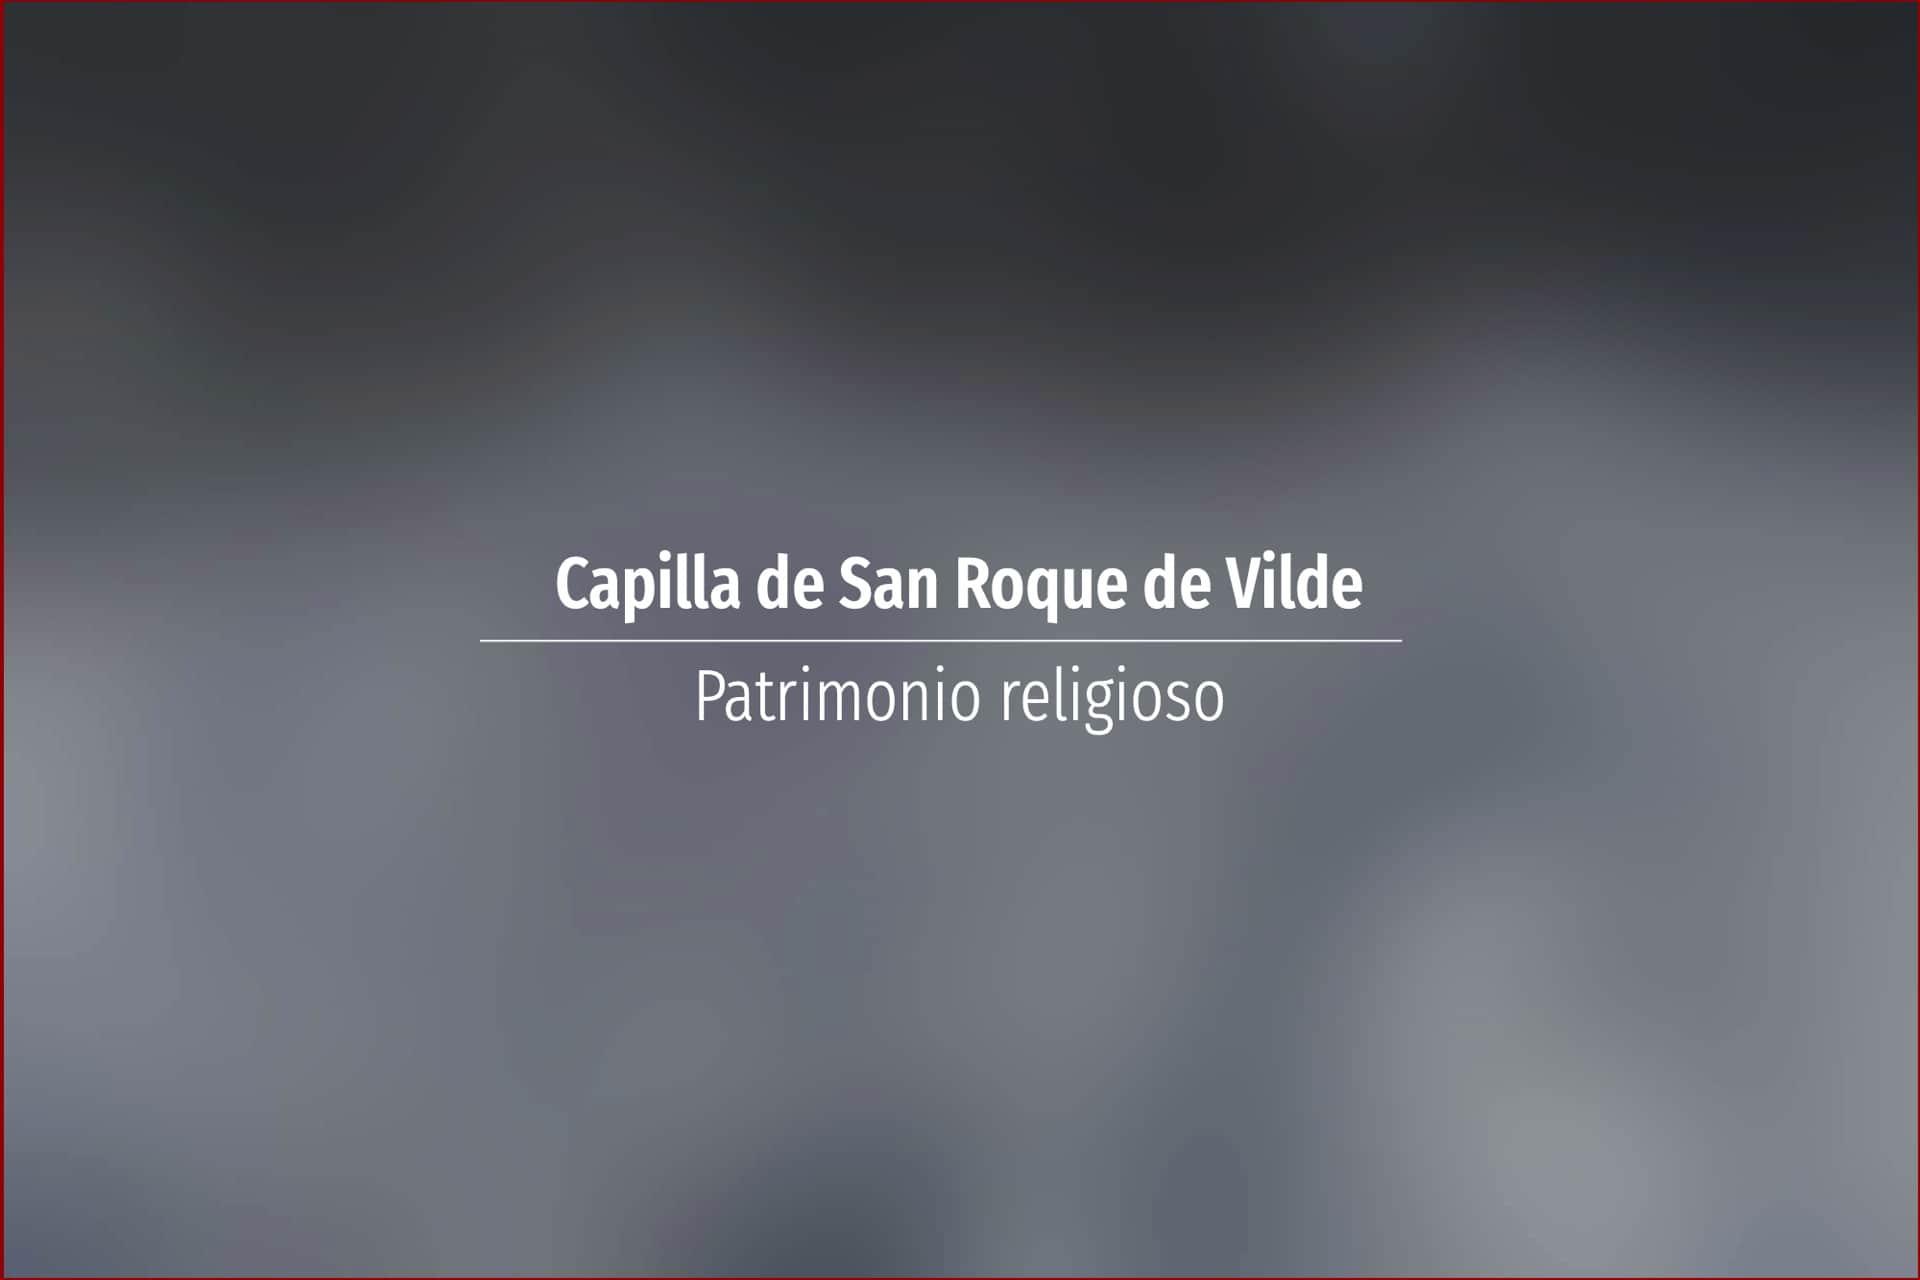 Capilla de San Roque de Vilde